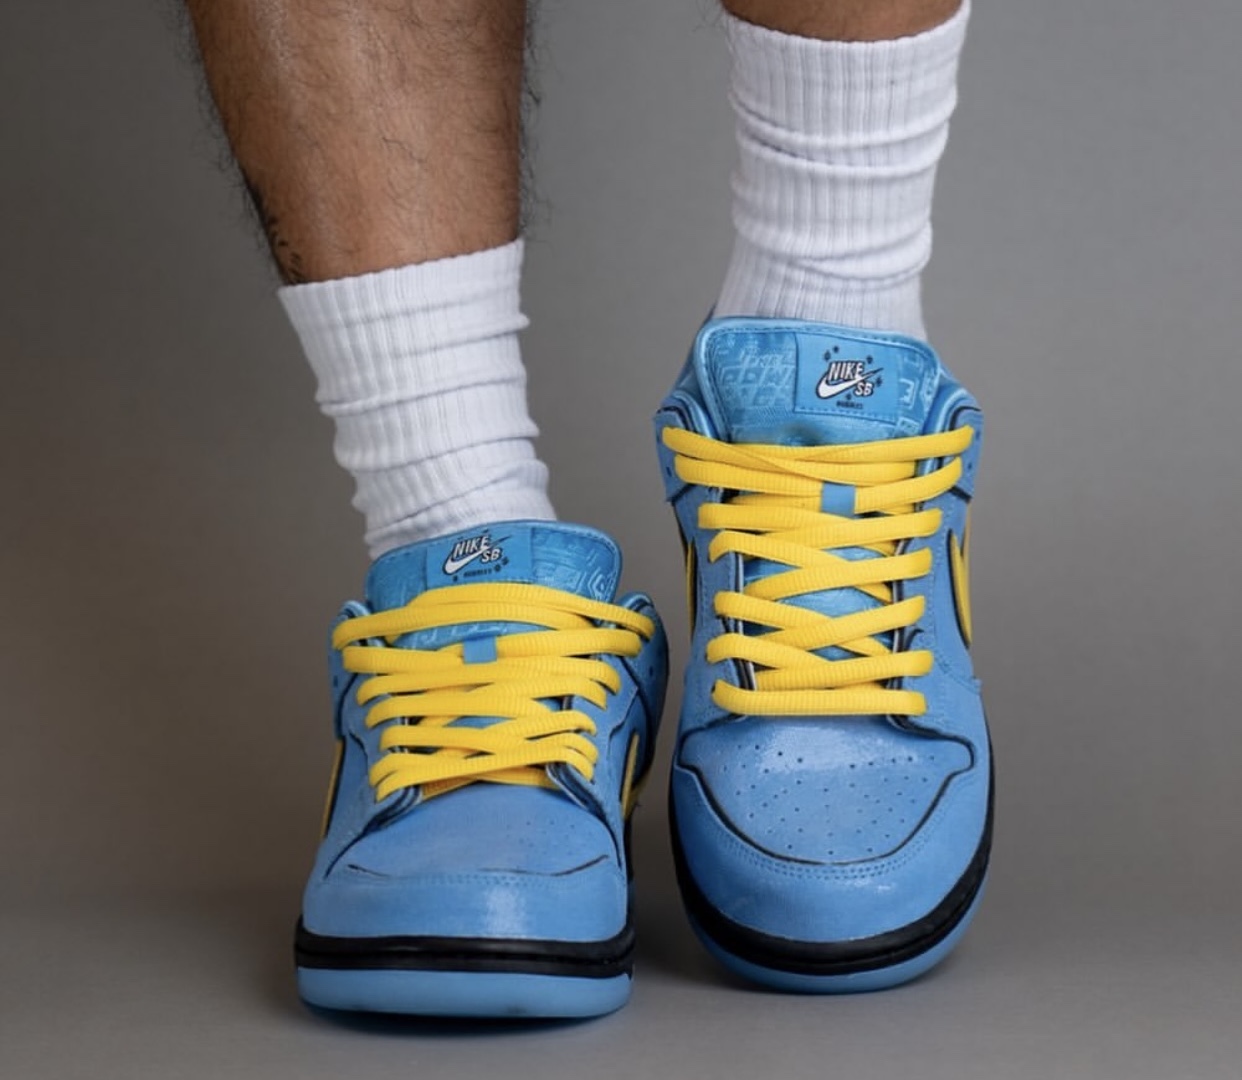 Nike vapor Daybreak-Type SE Herren Sneaker Original Turnschuhe Schuhe Schuh